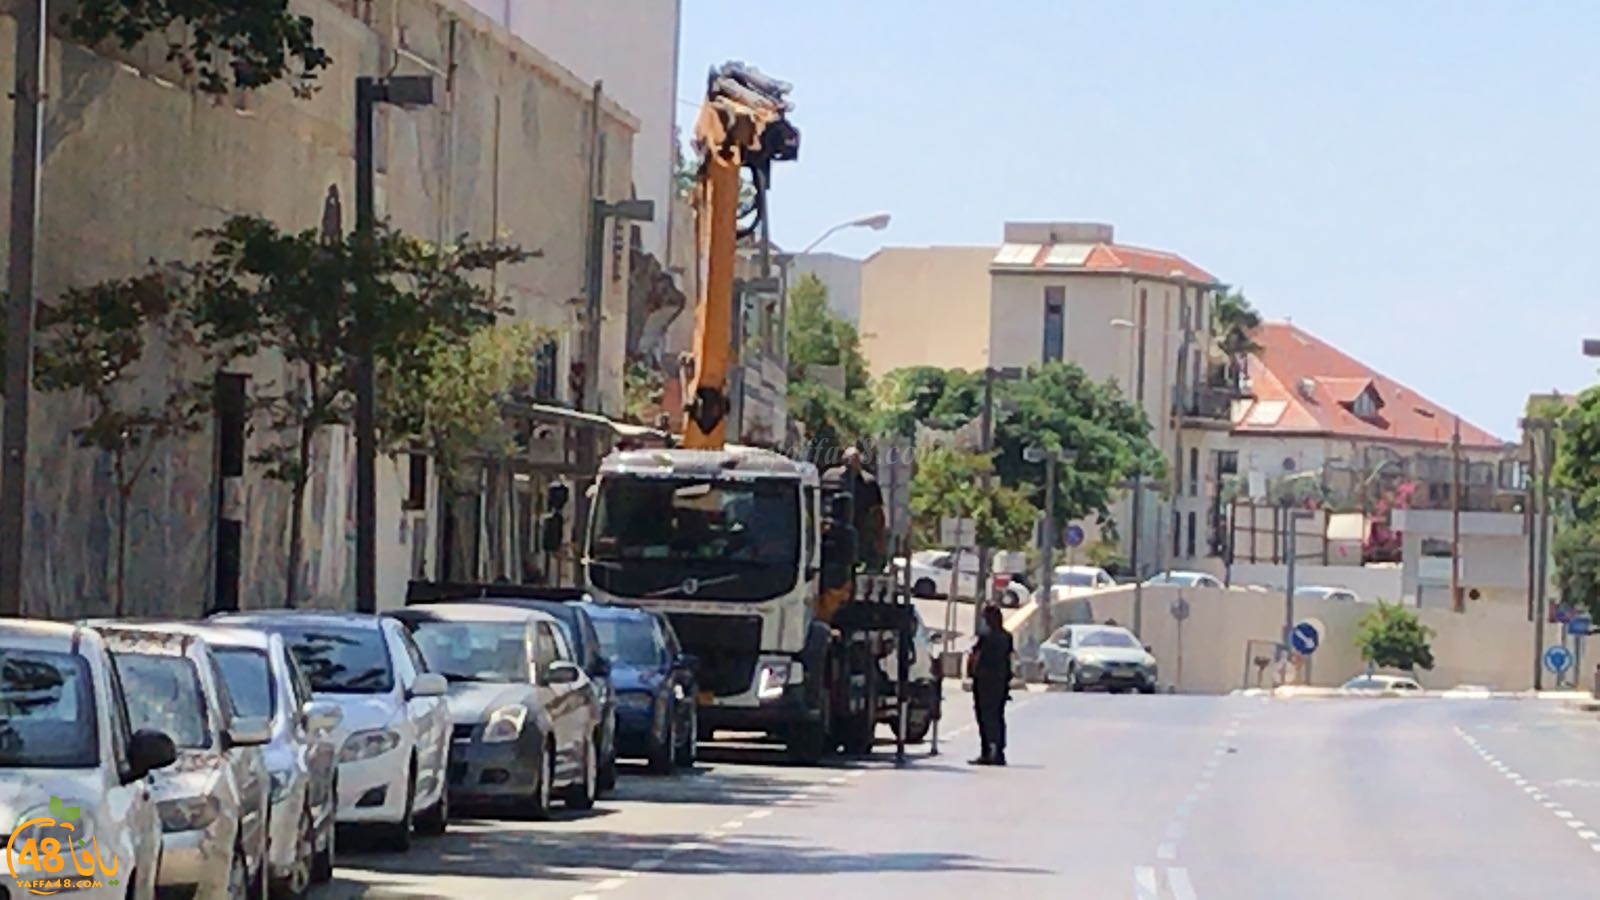   فيديو: بسبب كوابل كهربائية على الطريق - اصابة متوسطة لشاب من يافا بحادث طرق ذاتي 